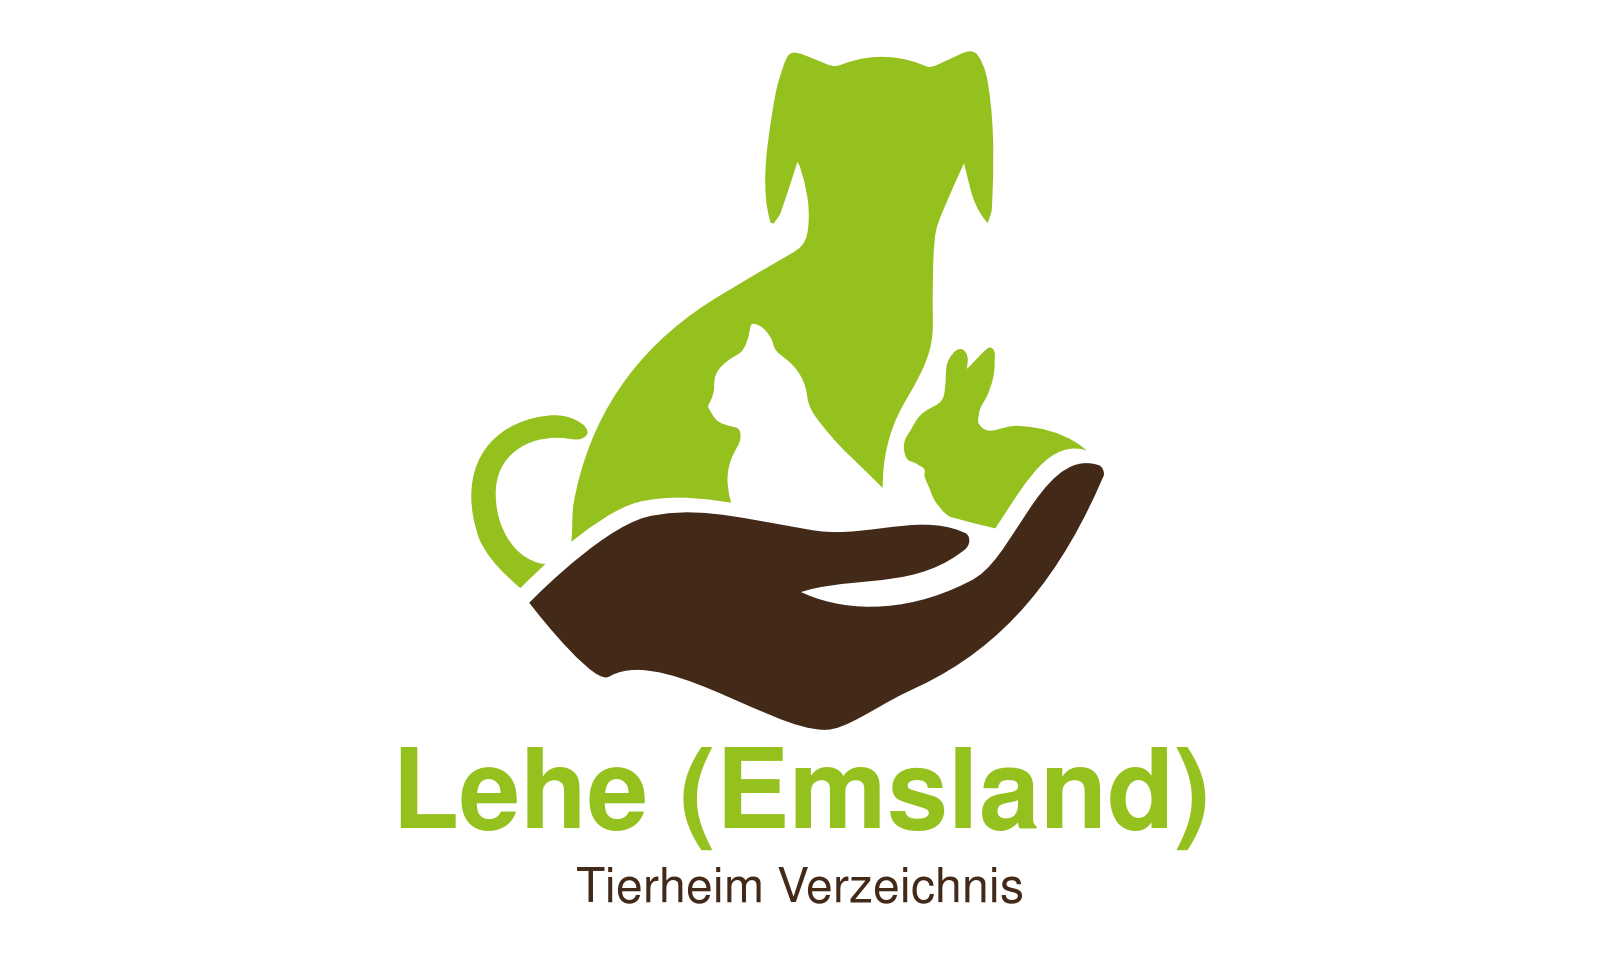 Tierheim Lehe (Emsland) ☀️ Informationsportal Tierheim Verzeichnis